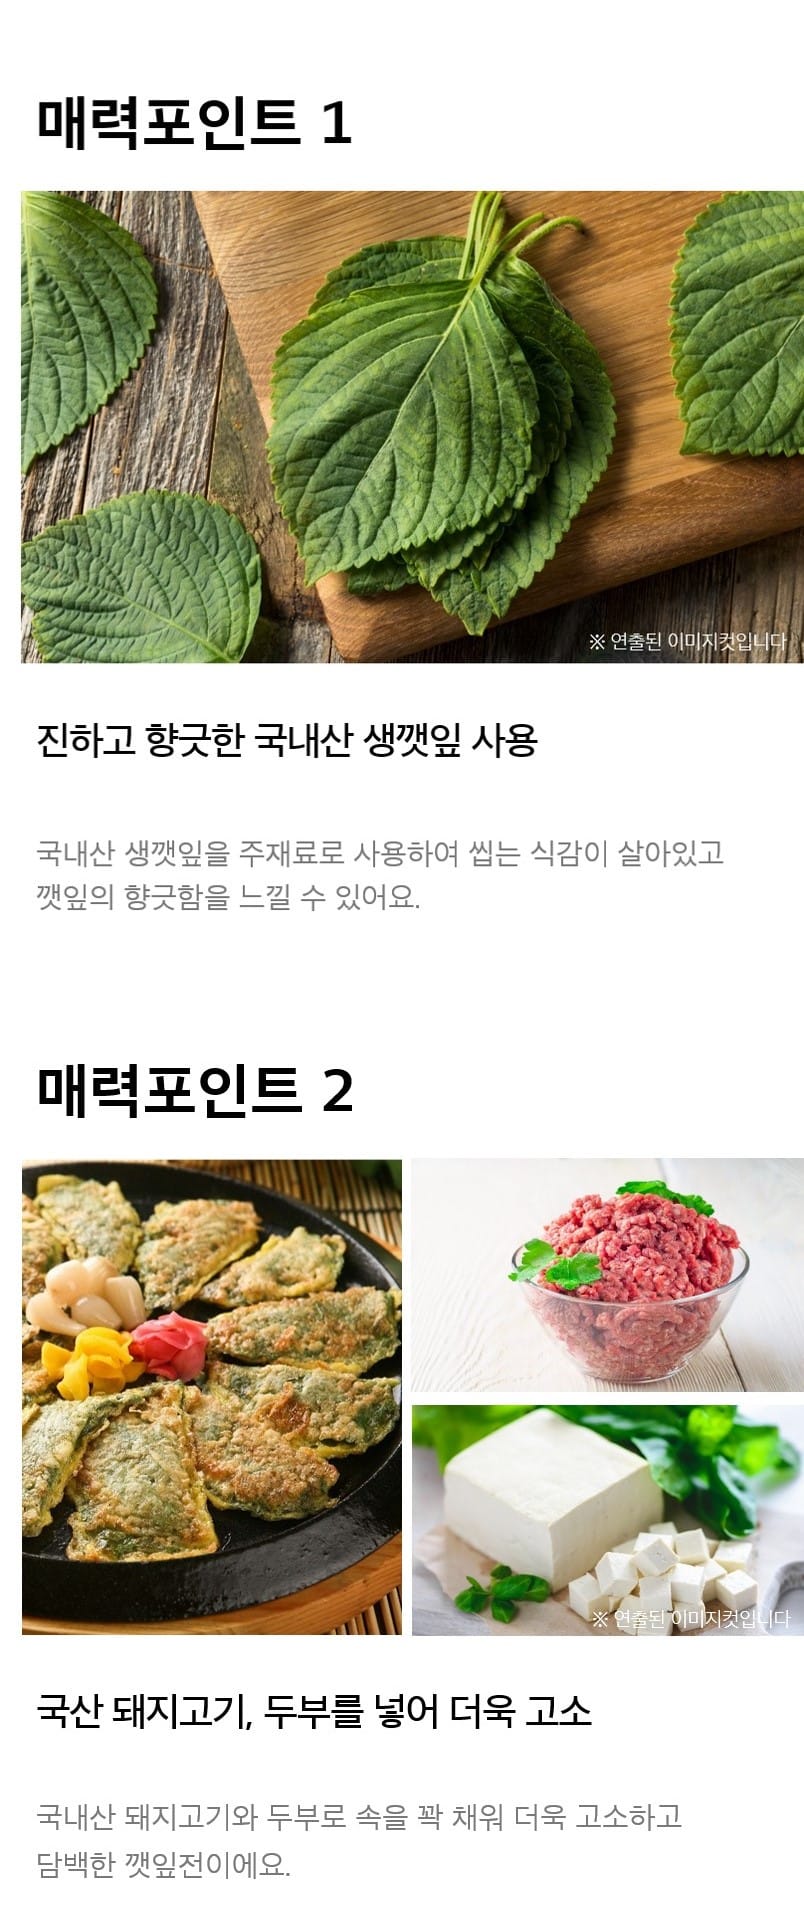 韓國食品-[Homeplus] 芝麻葉煎餅 345g